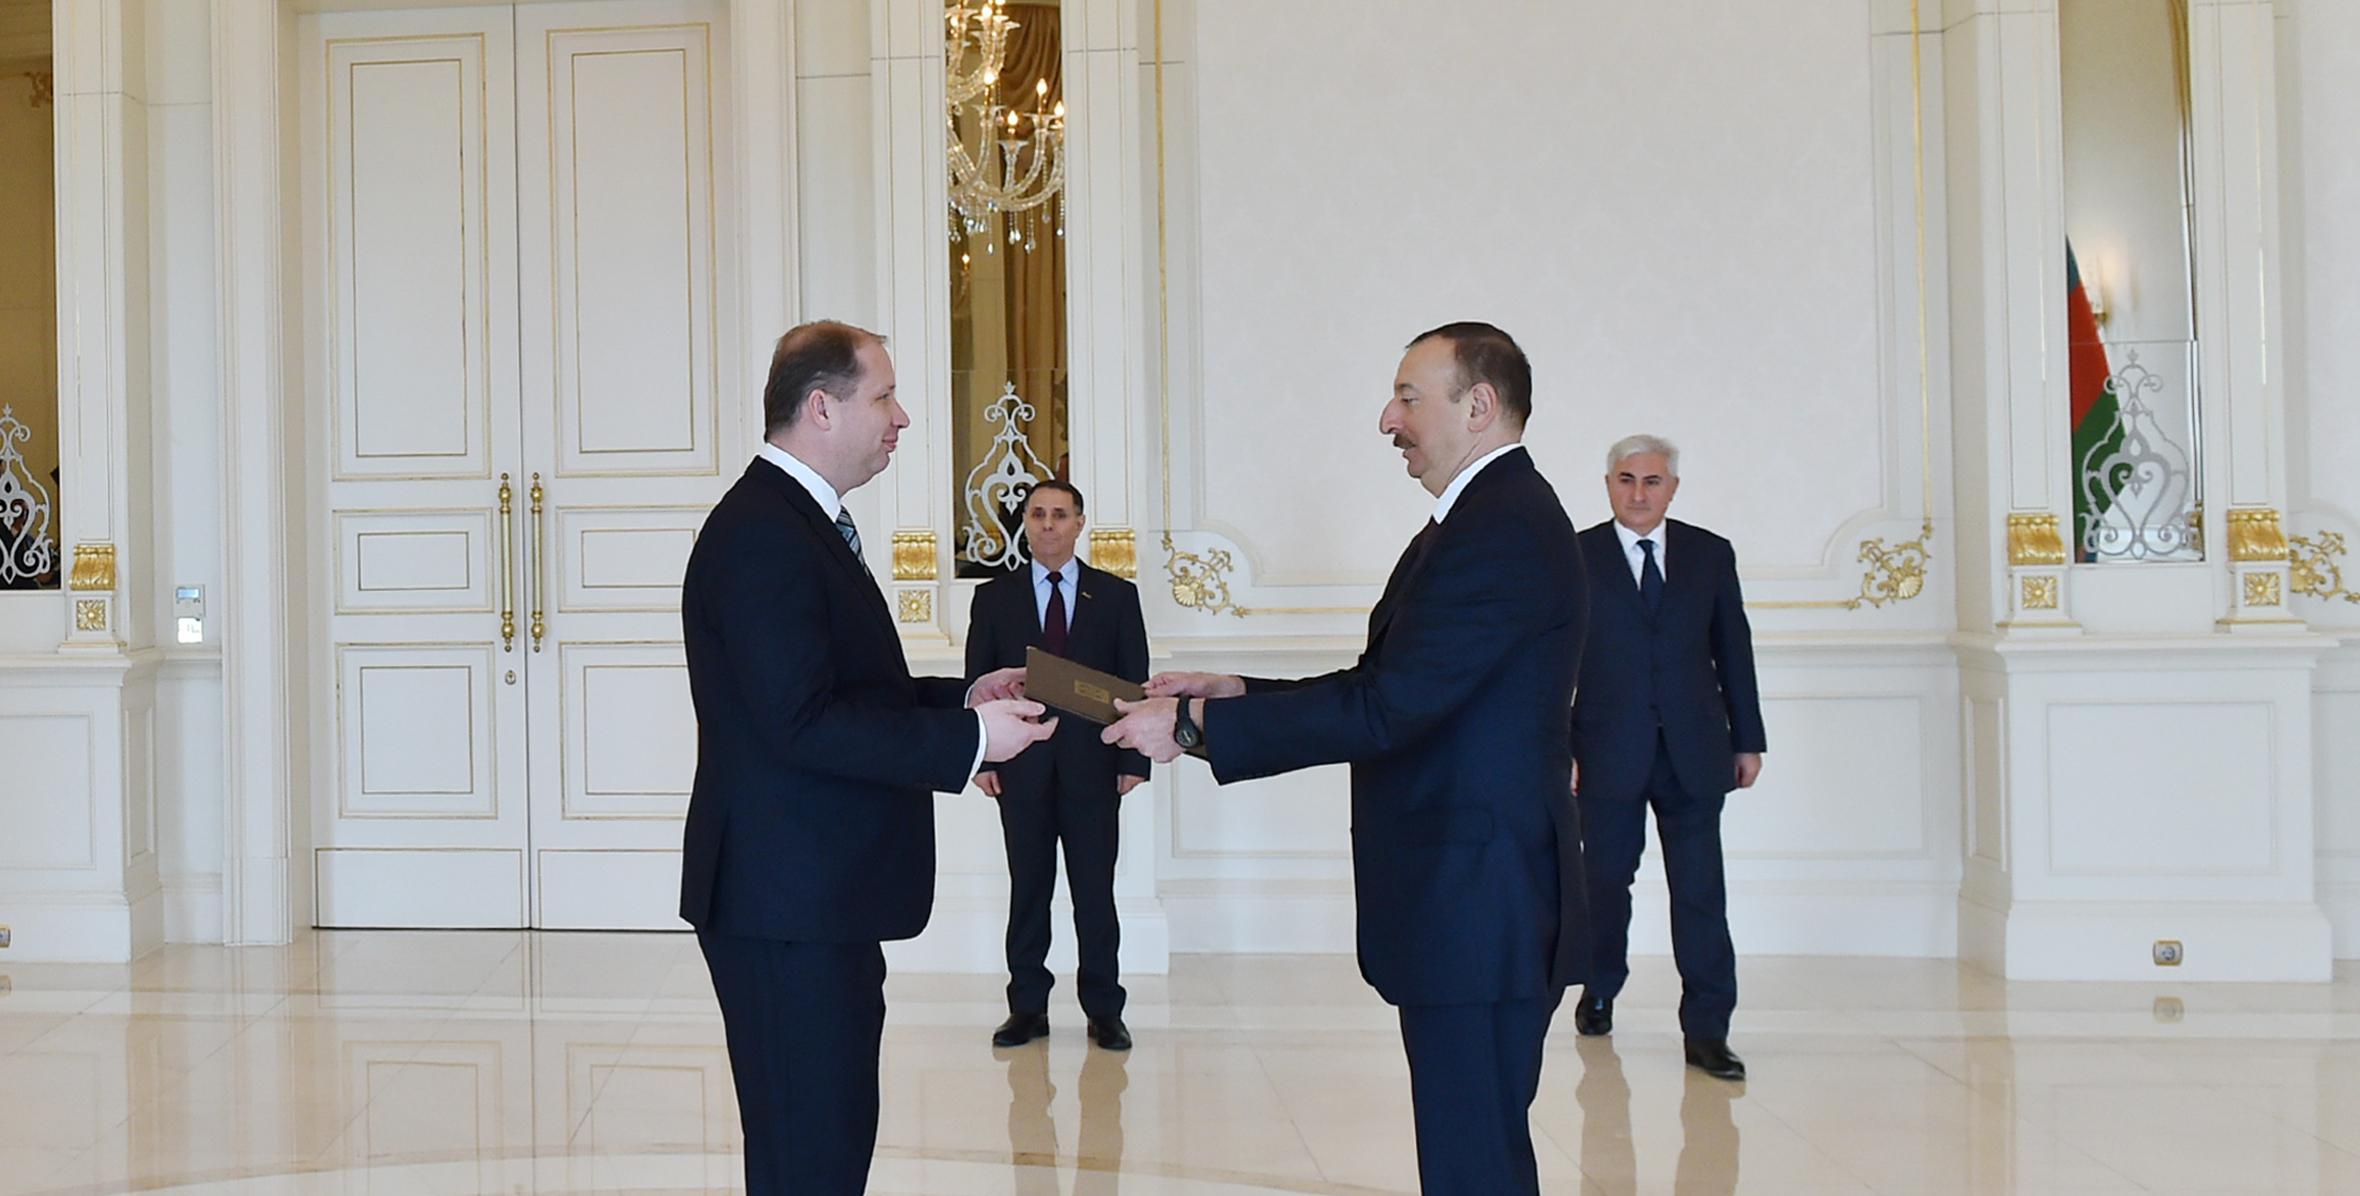 Ильхам Алиев принял верительные грамоты новоназначенного посла Словакии в Азербайджане